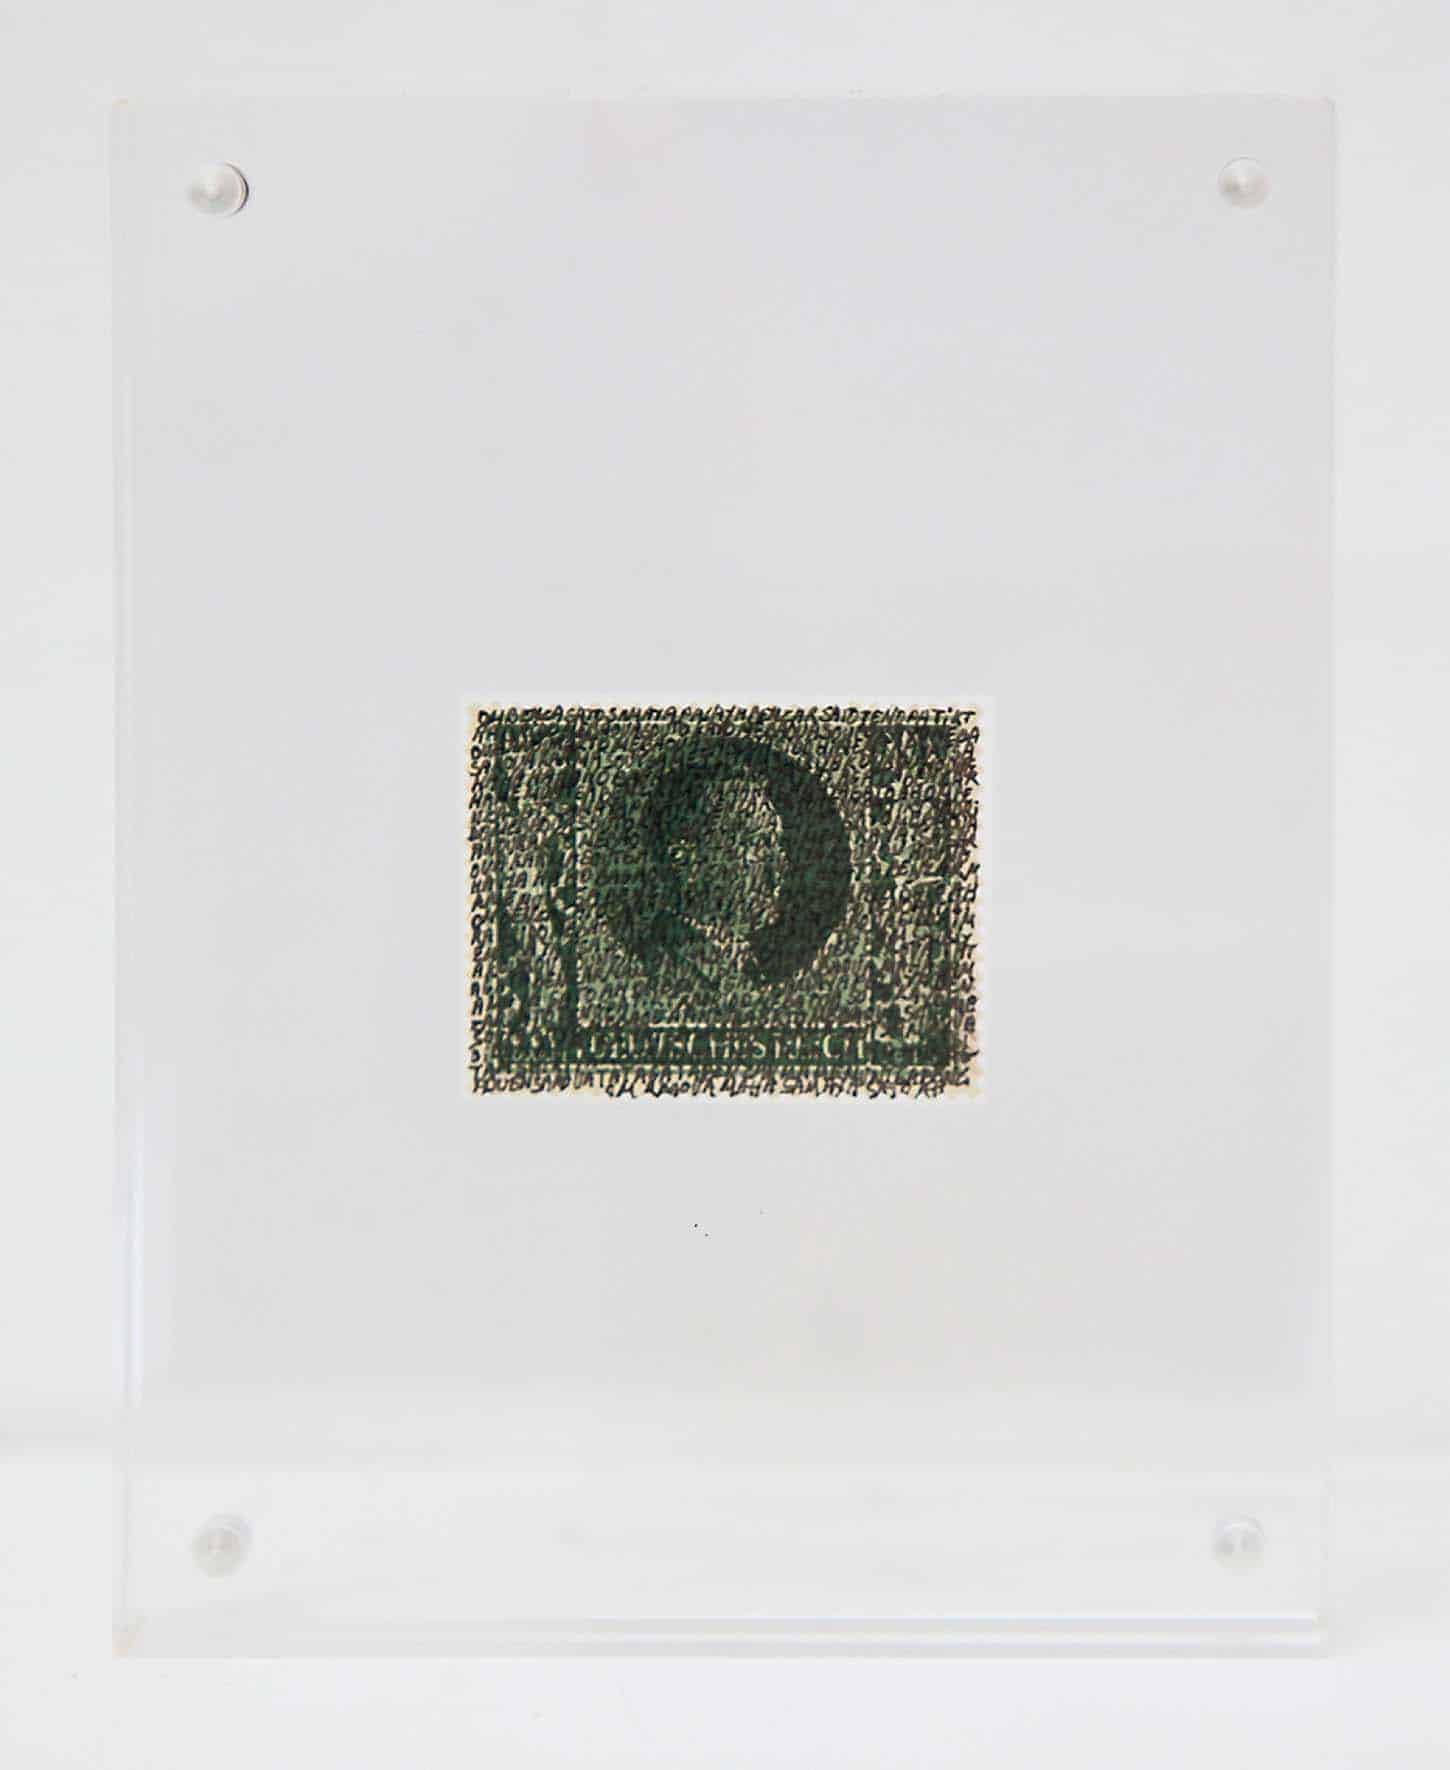 Léa le Bricomte
Mantras
série de timbres allemands WW2 recouvert du mantra tibétain aux 100 syllabes de Vajrasattva pour la purification. Cadres en plexi